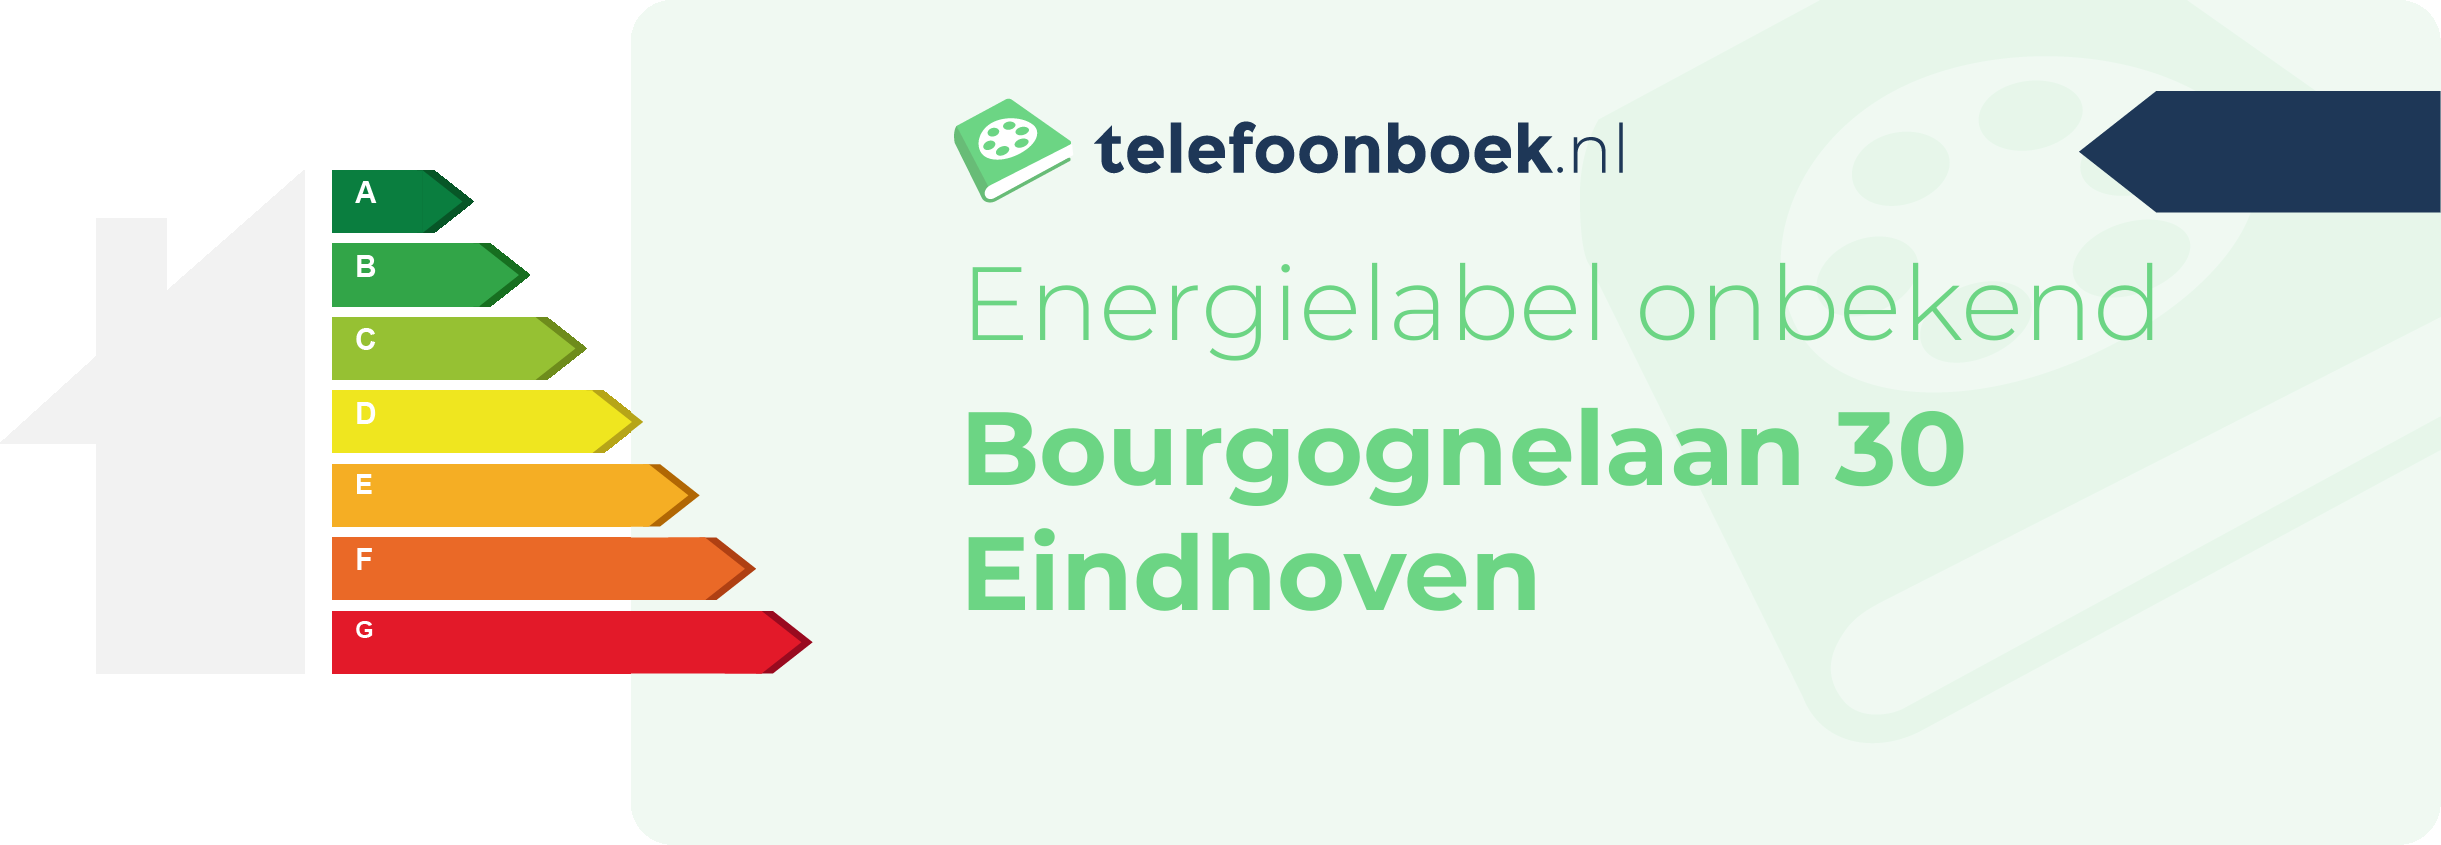 Energielabel Bourgognelaan 30 Eindhoven